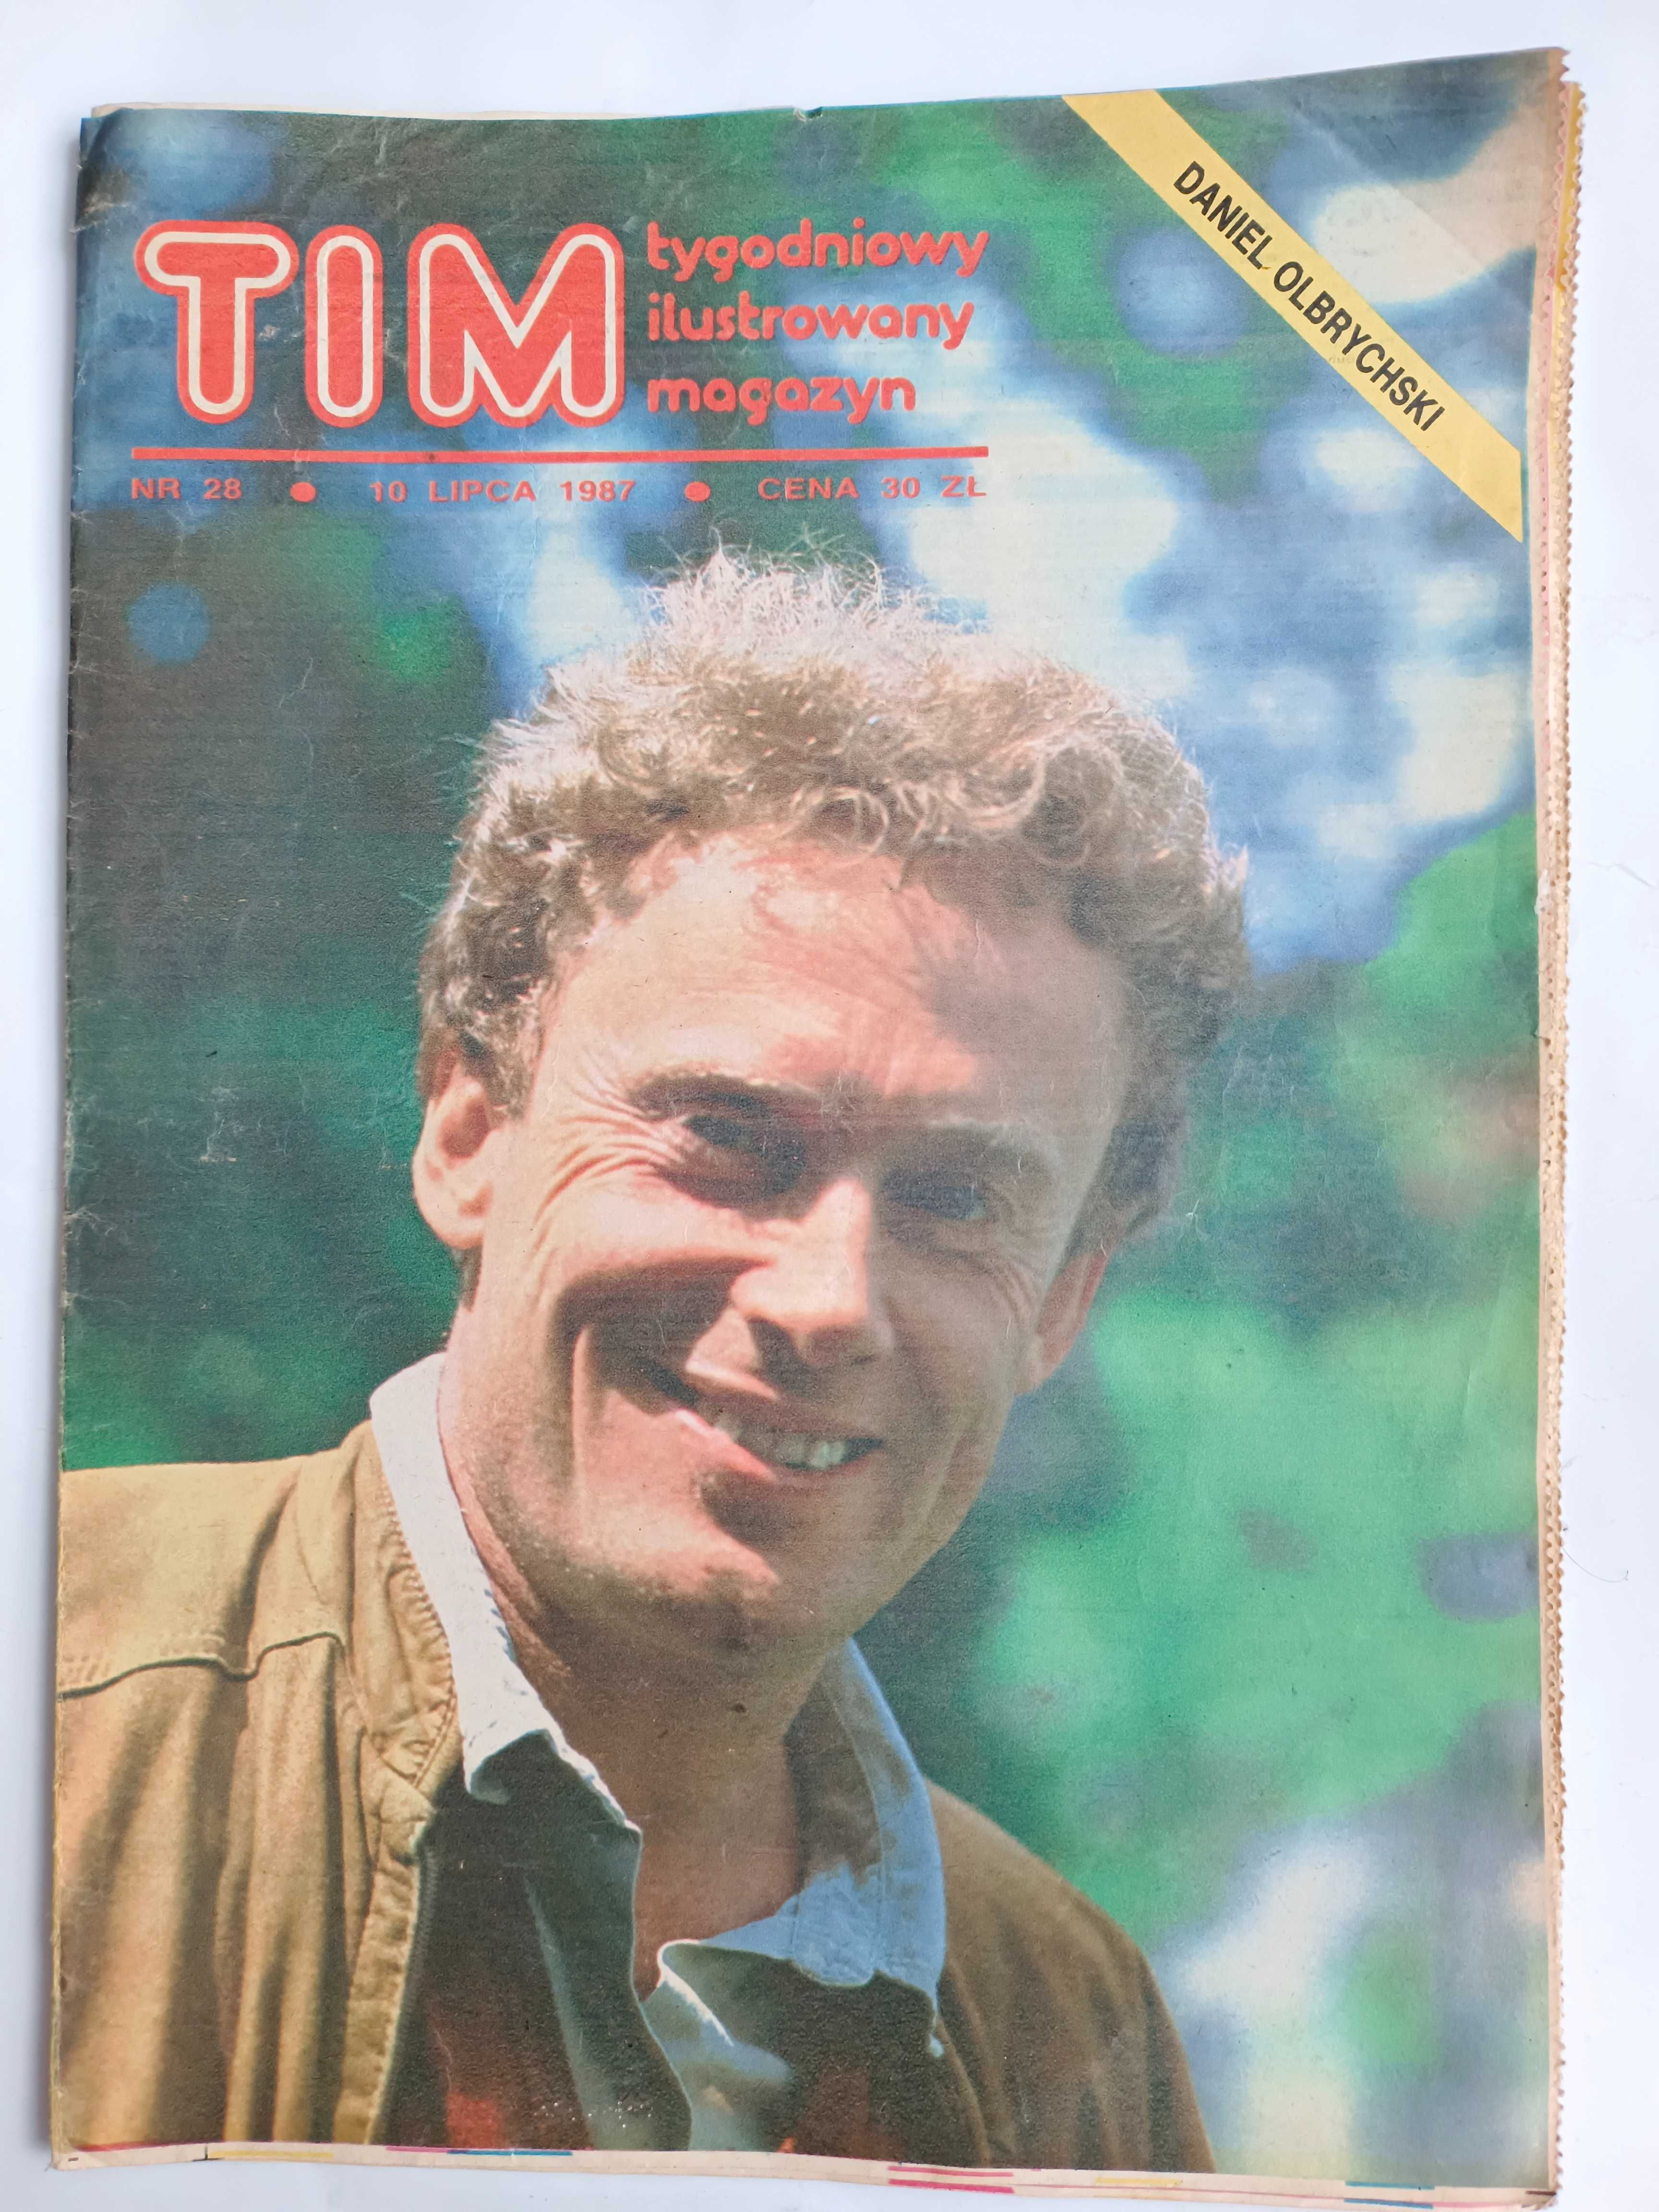 TIM 
Tygodniowy ilustrowany magazyn
Nr  28 z 10 lipca 1987 r.